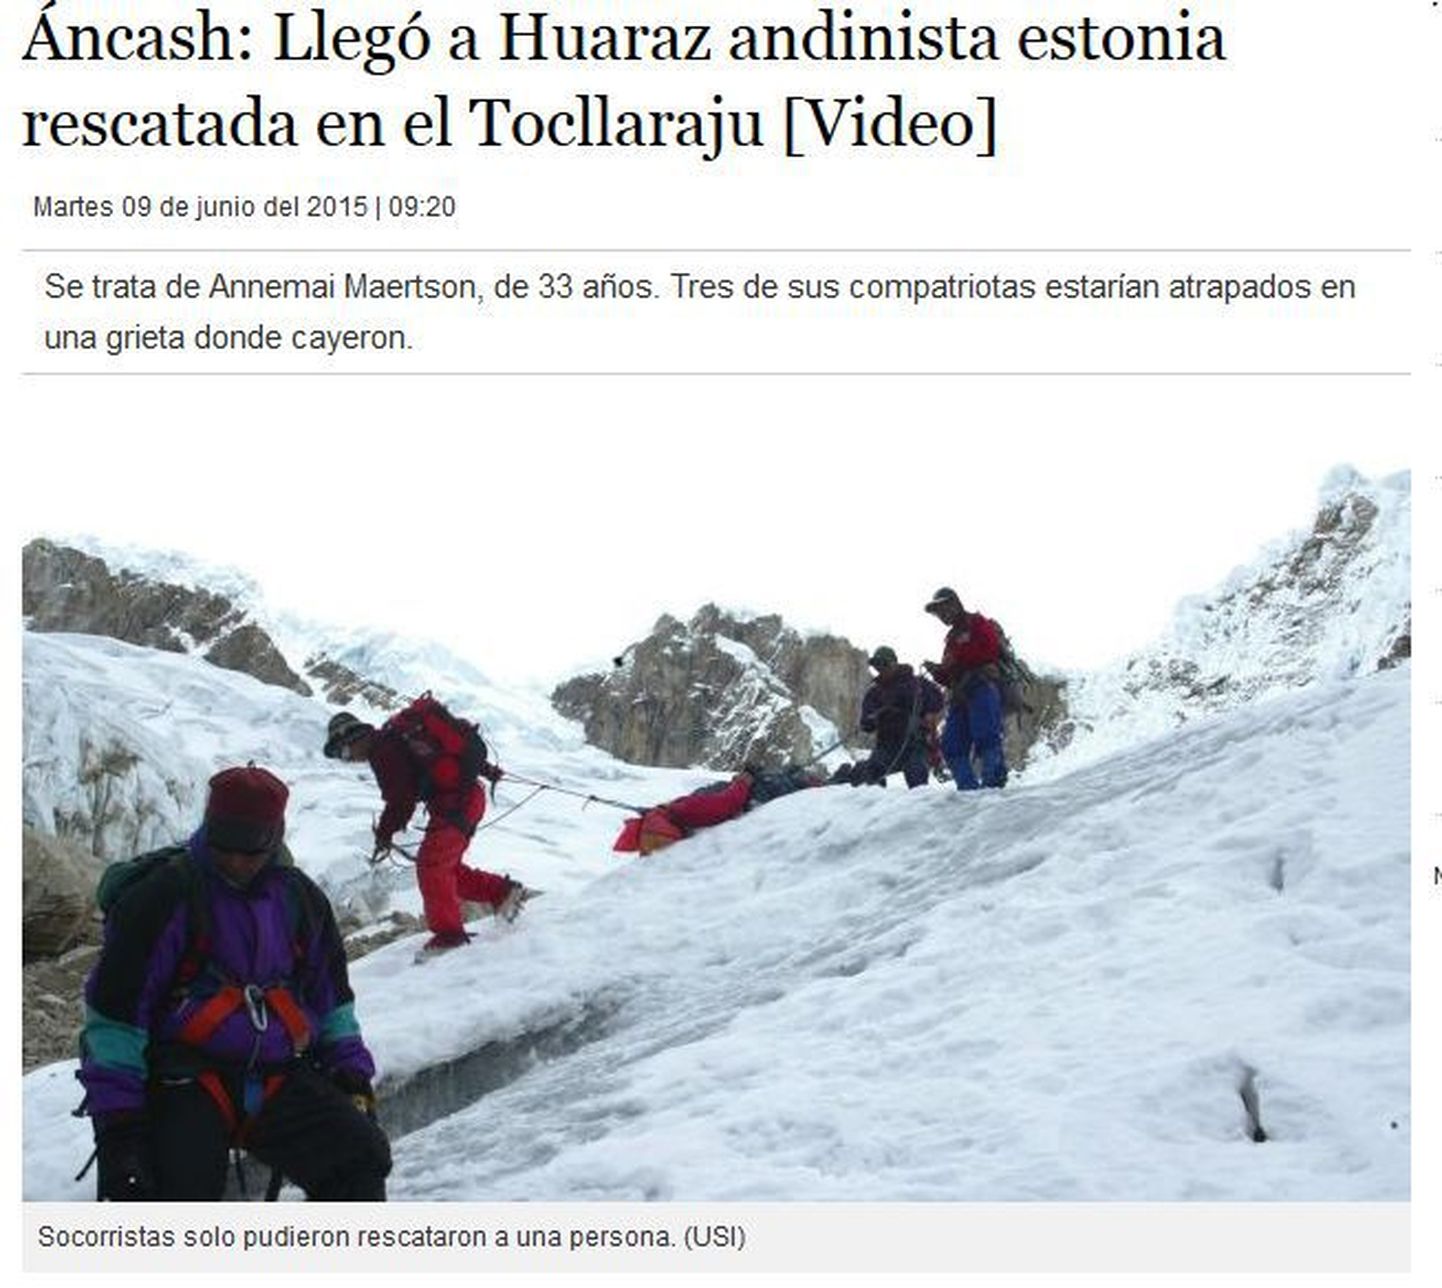 33-aastase Annemai Märtsoni leidmist ja päästmist on Peruu meedia kajastanud väga põhjalikult. Pildil on jäädvustatud naise õnnetuskohast äratoomist.